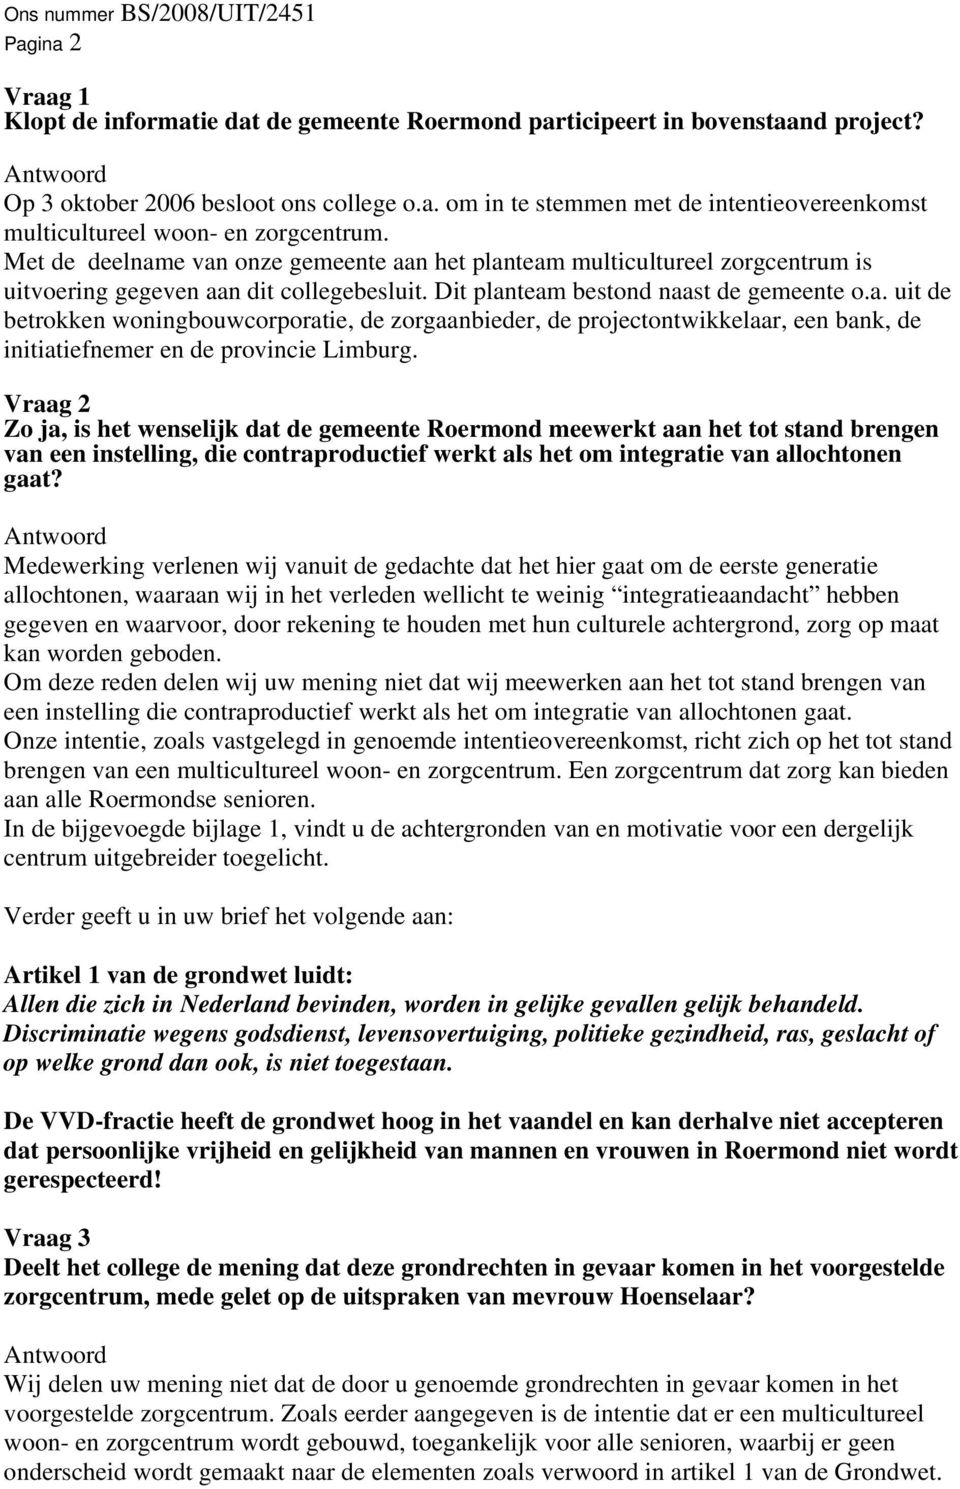 Vraag 2 Zo ja, is het wenselijk dat de gemeente Roermond meewerkt aan het tot stand brengen van een instelling, die contraproductief werkt als het om integratie van allochtonen gaat?